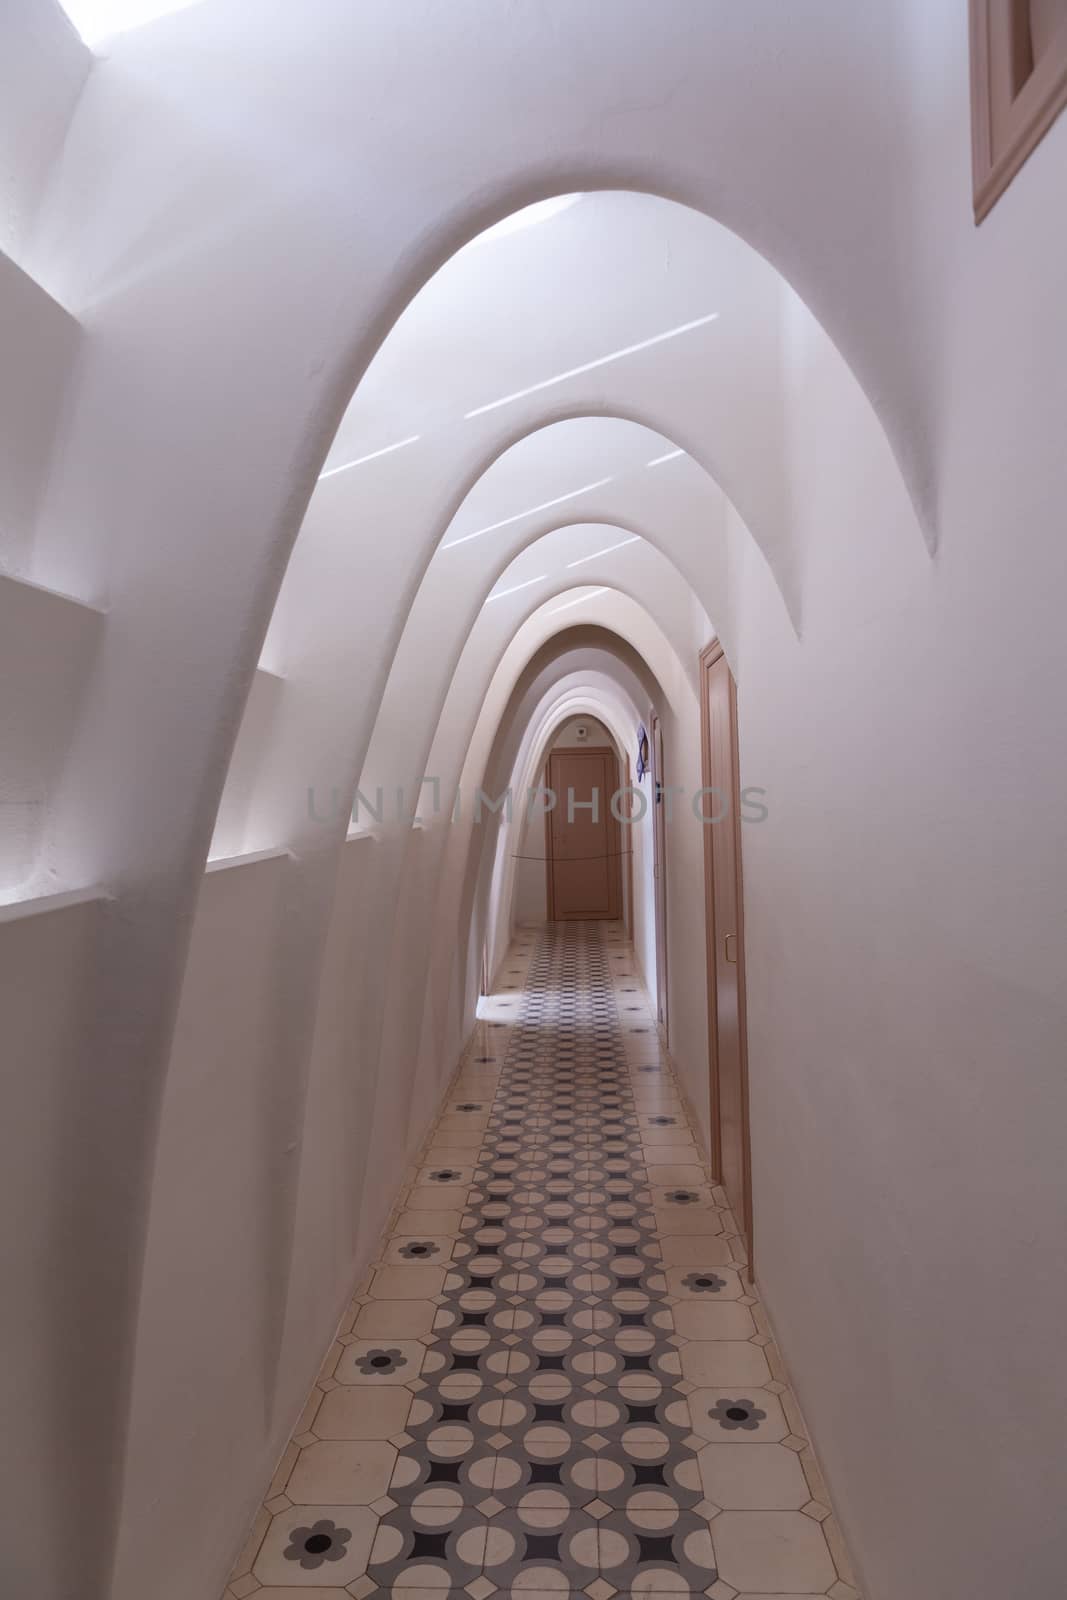 Corridor in Casa Batllo, Barcelona, Spain by vlad-m